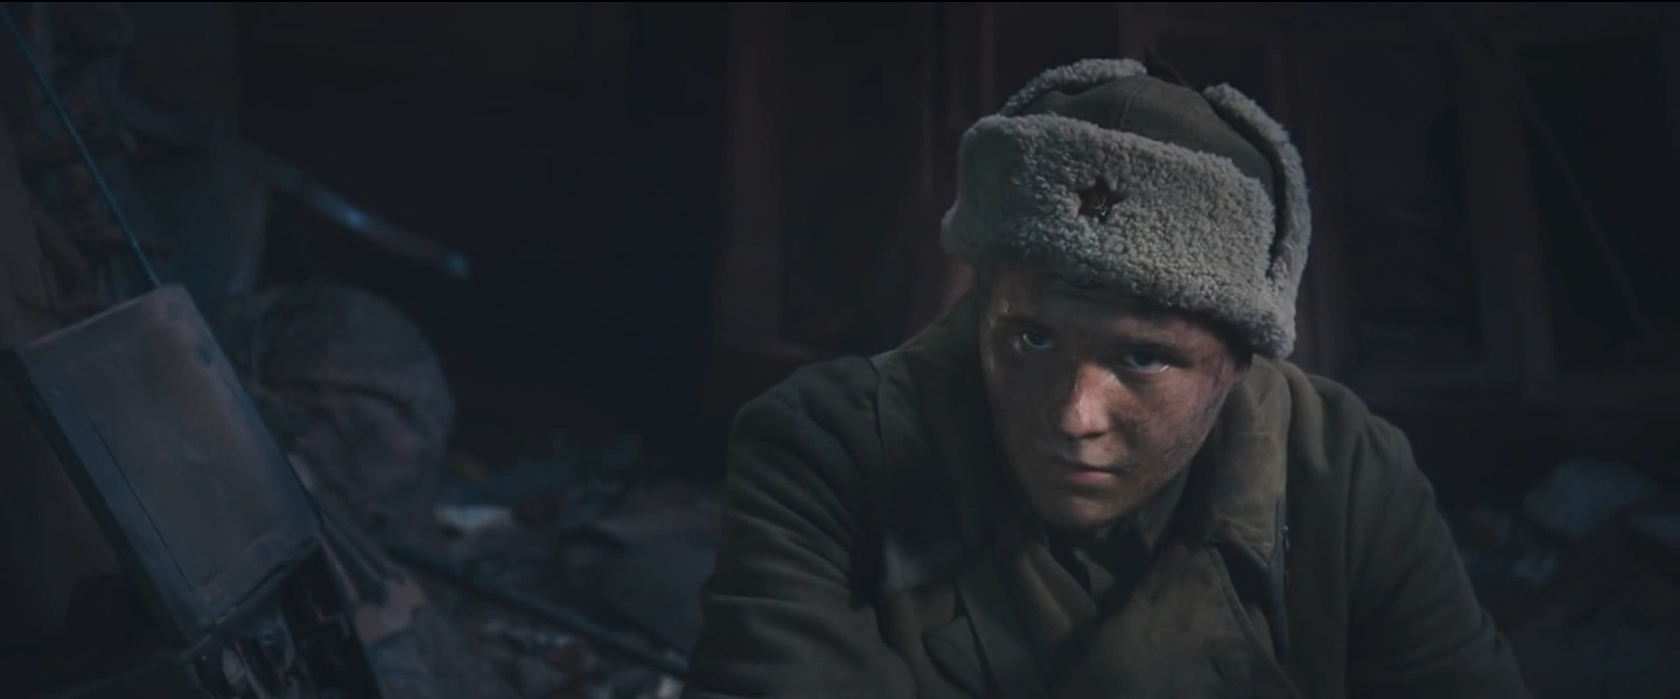 Сталинград (2013) - обзор кино